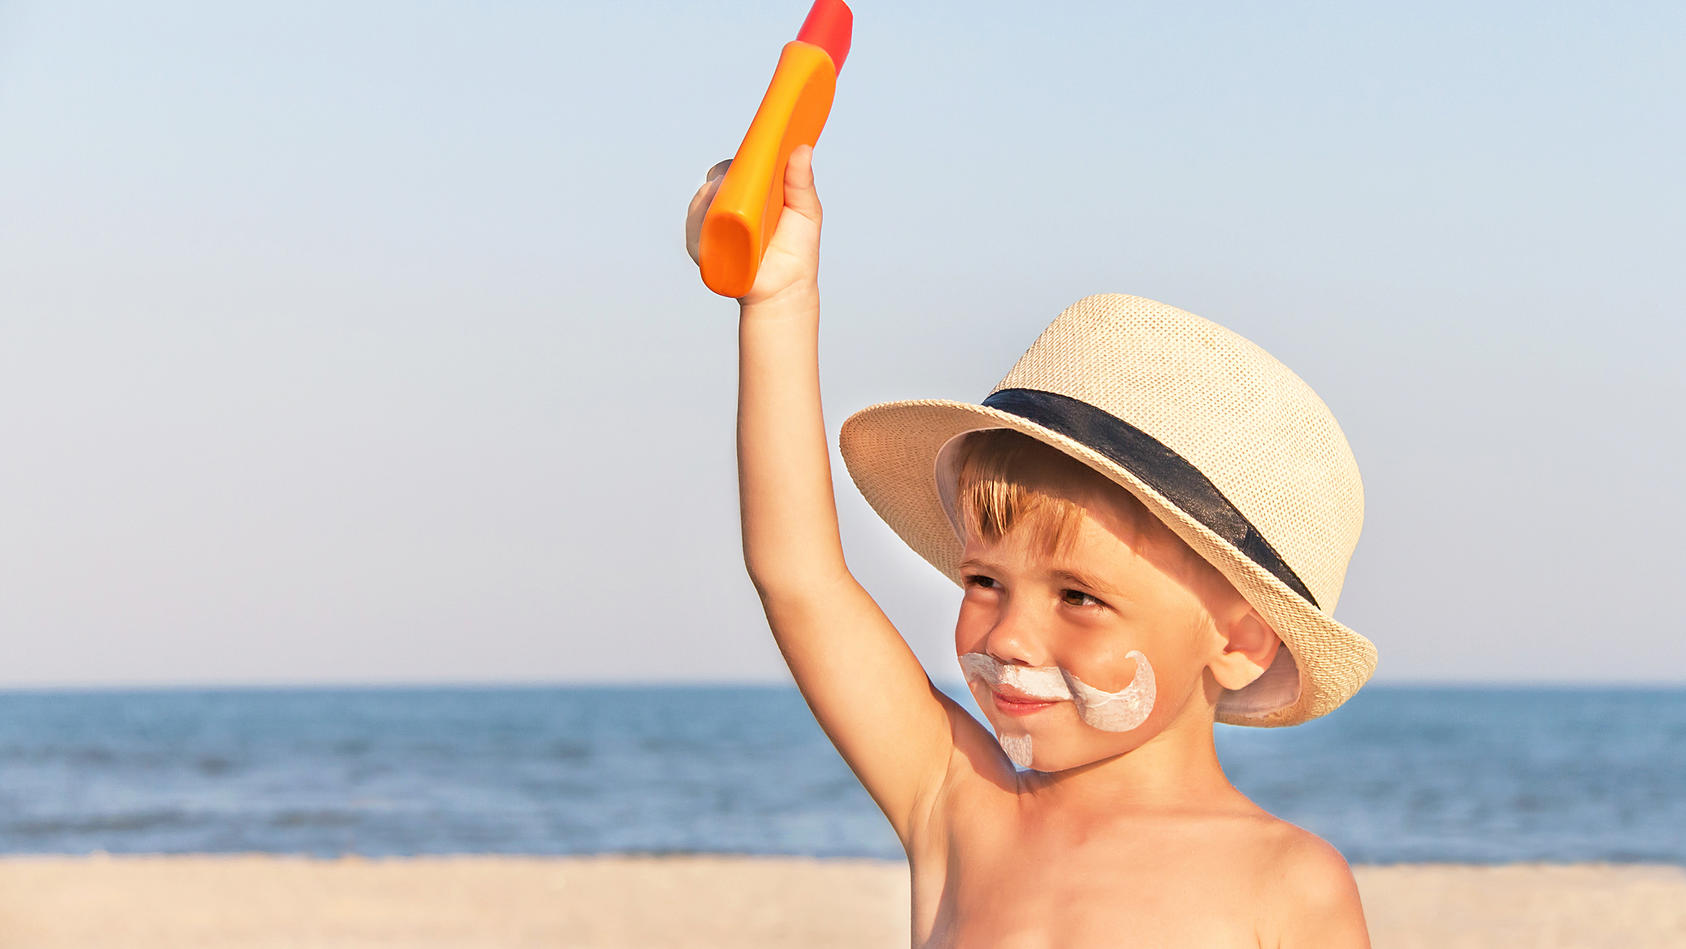 Sonnenschutzmittel für Kinder bei Stiftung Warentest: Nur ein Produkt fällt  durch - das teuerste!